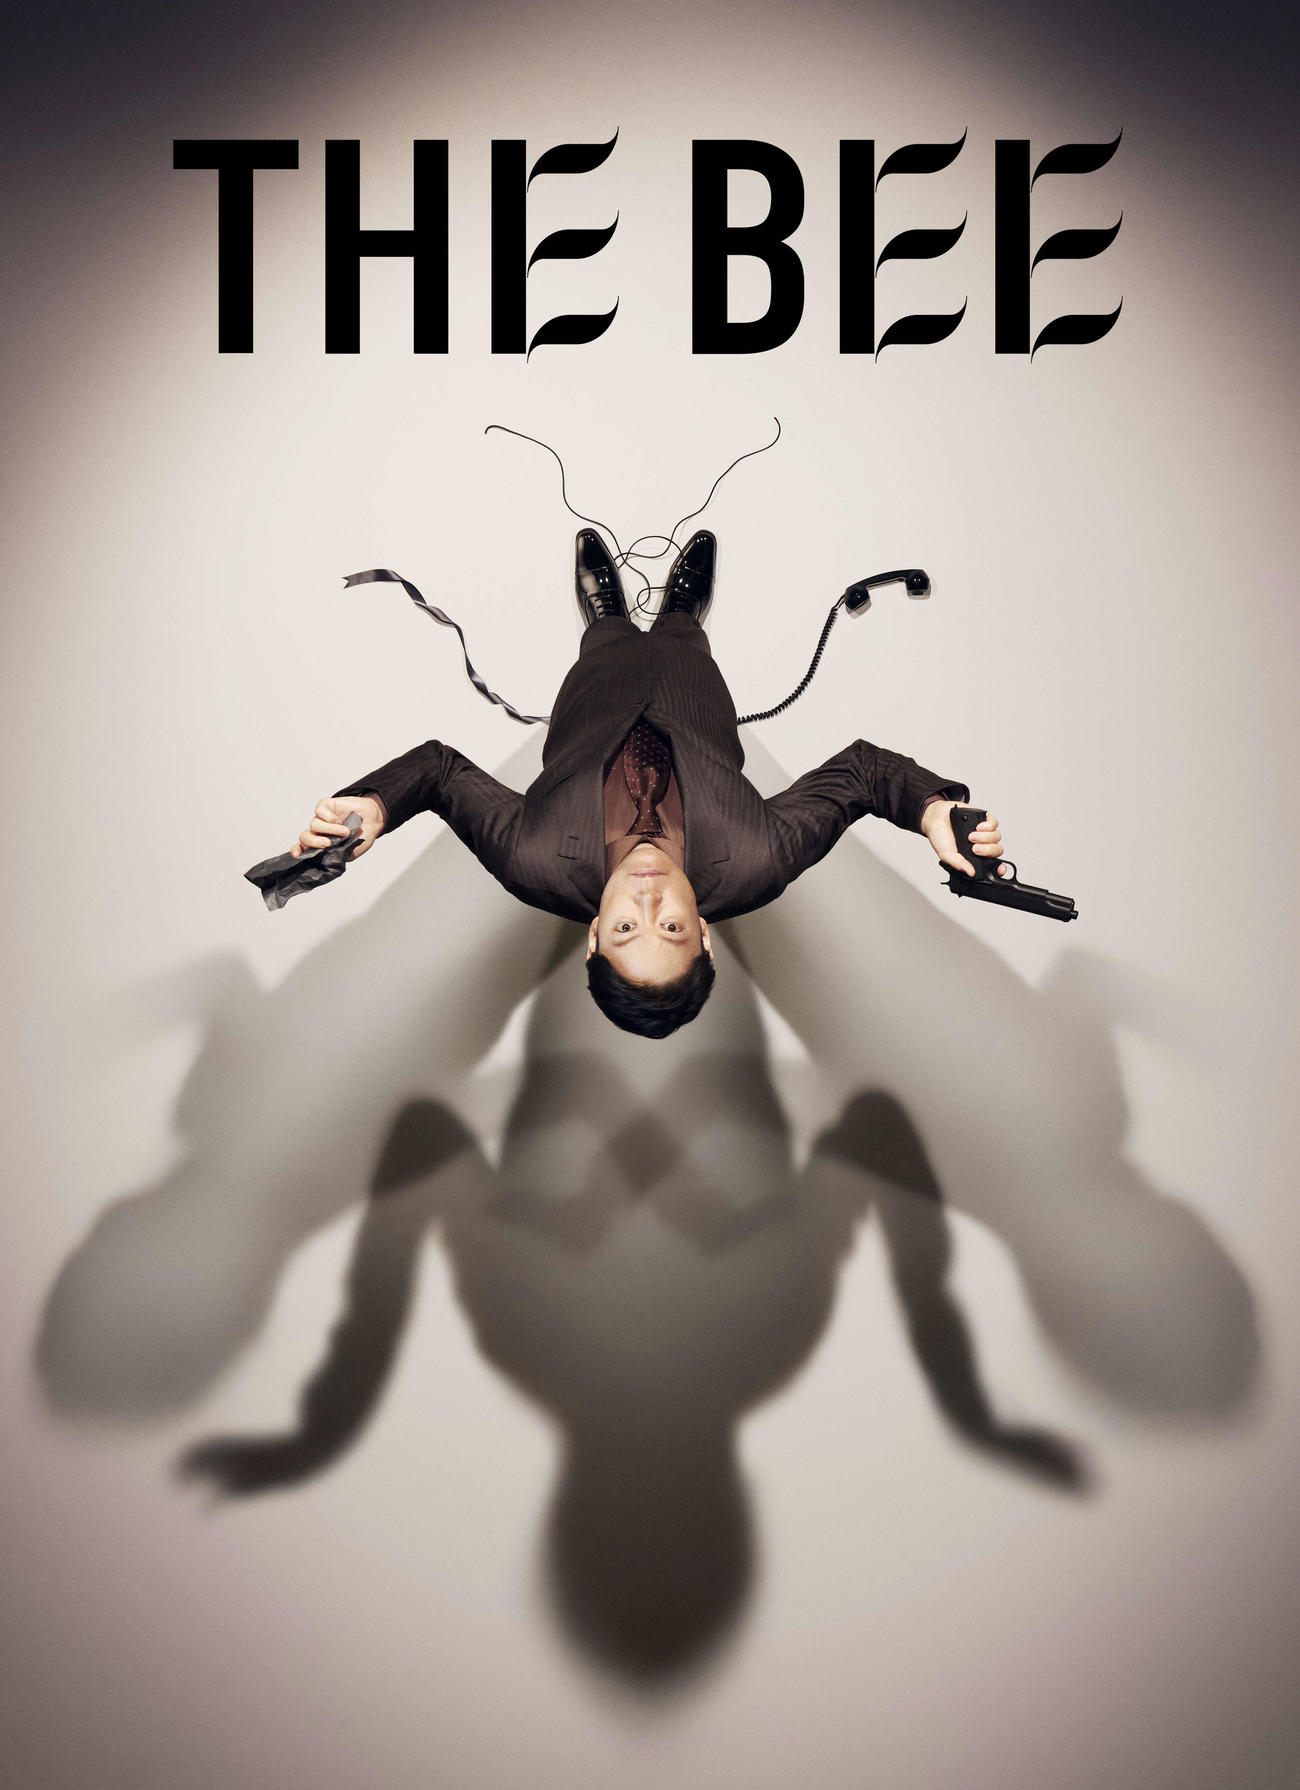 舞台「THE BEE」のイメージビジュアル